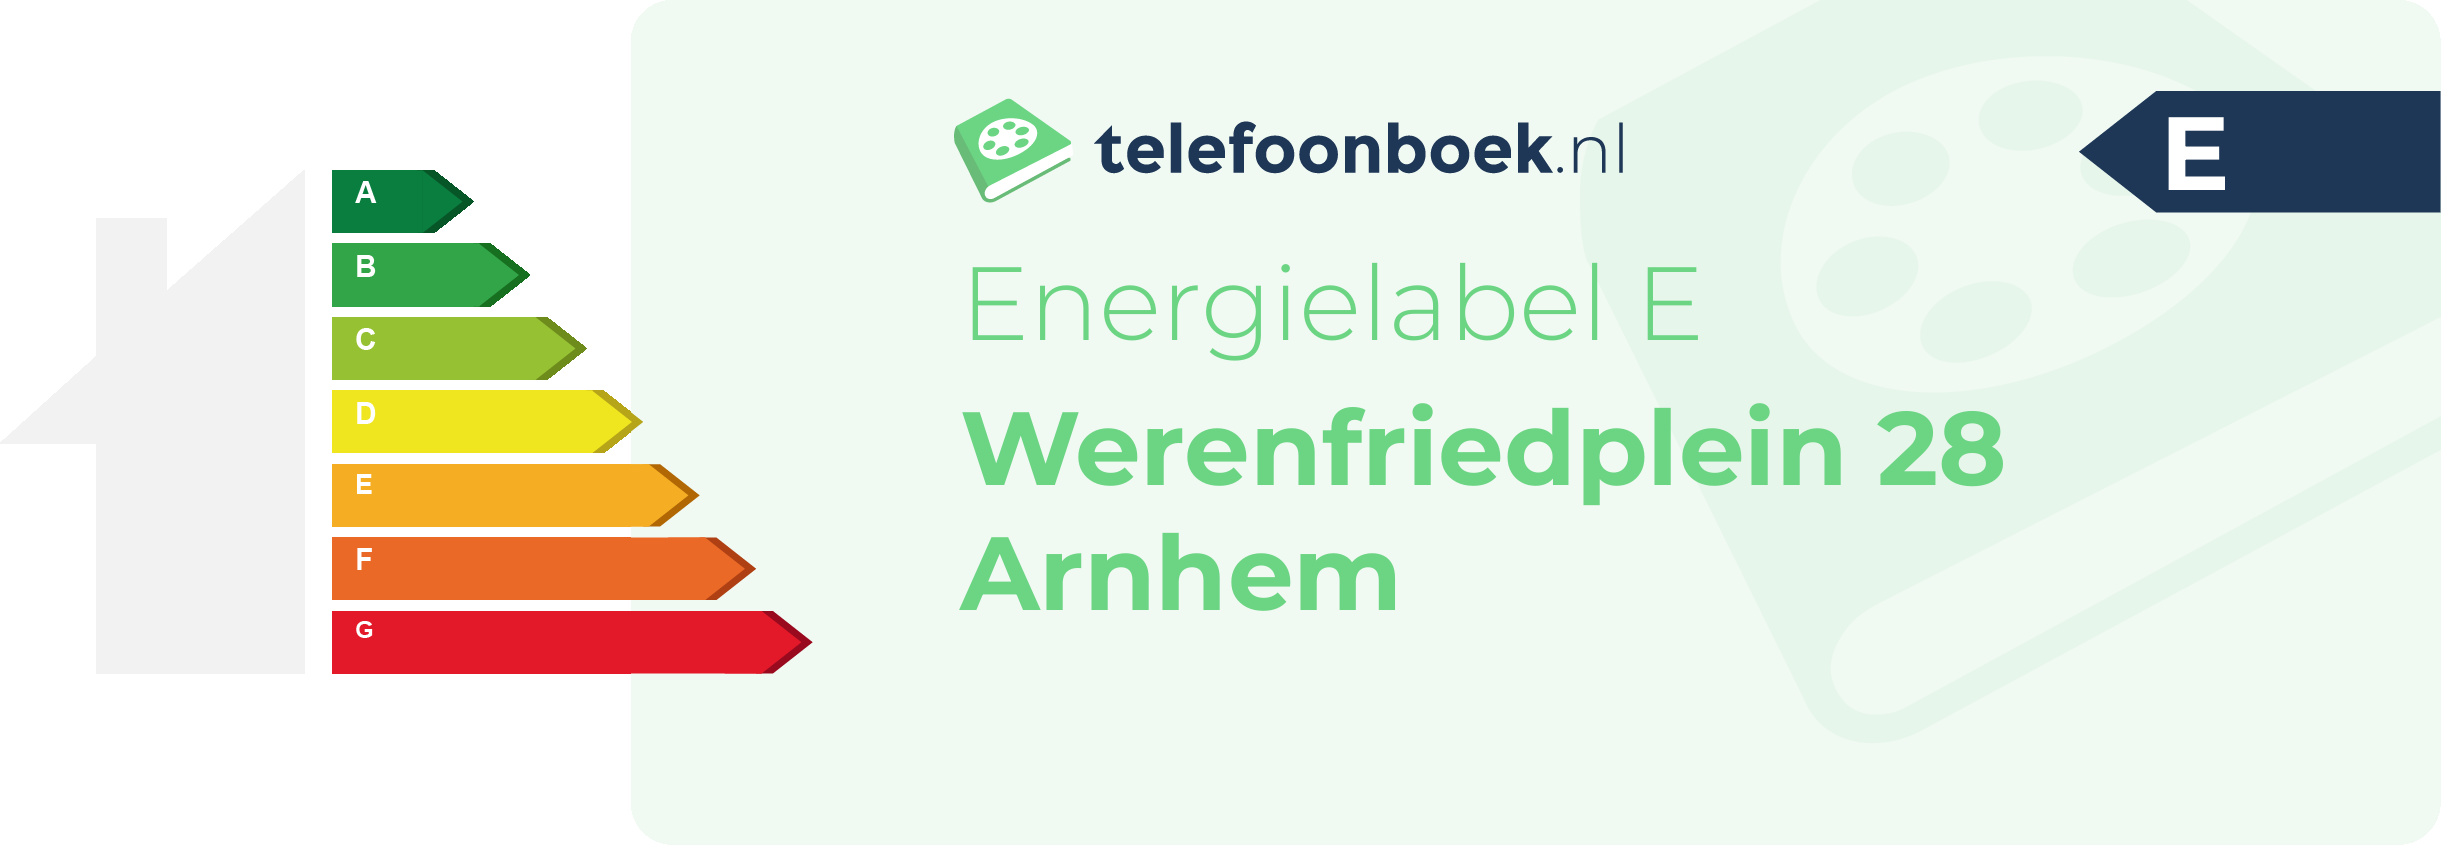 Energielabel Werenfriedplein 28 Arnhem